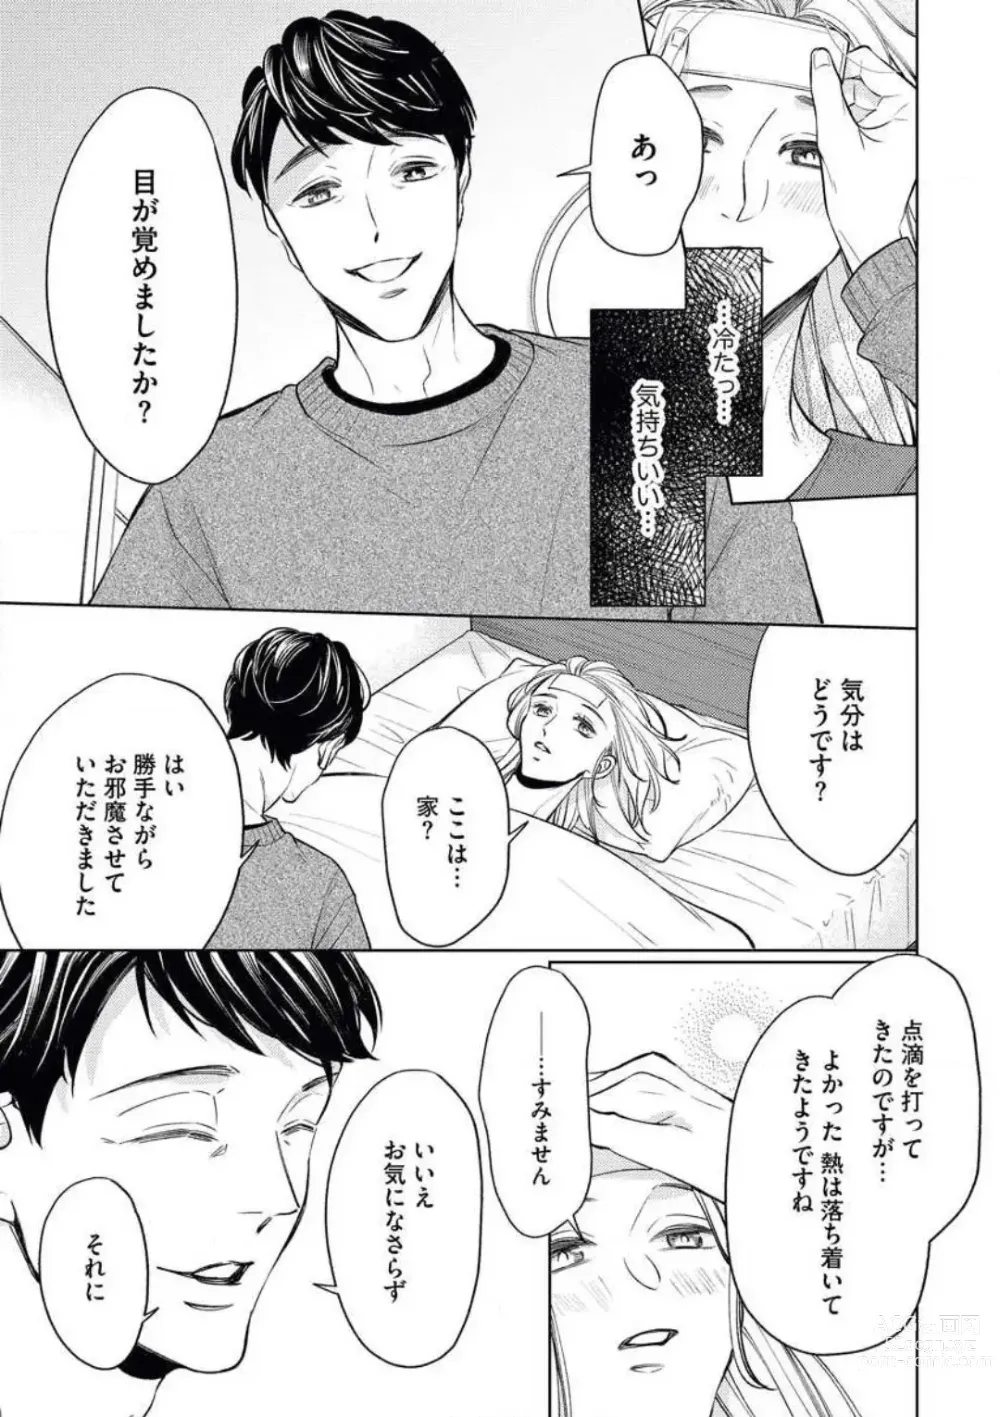 Page 23 of manga Anata o Kudasai!